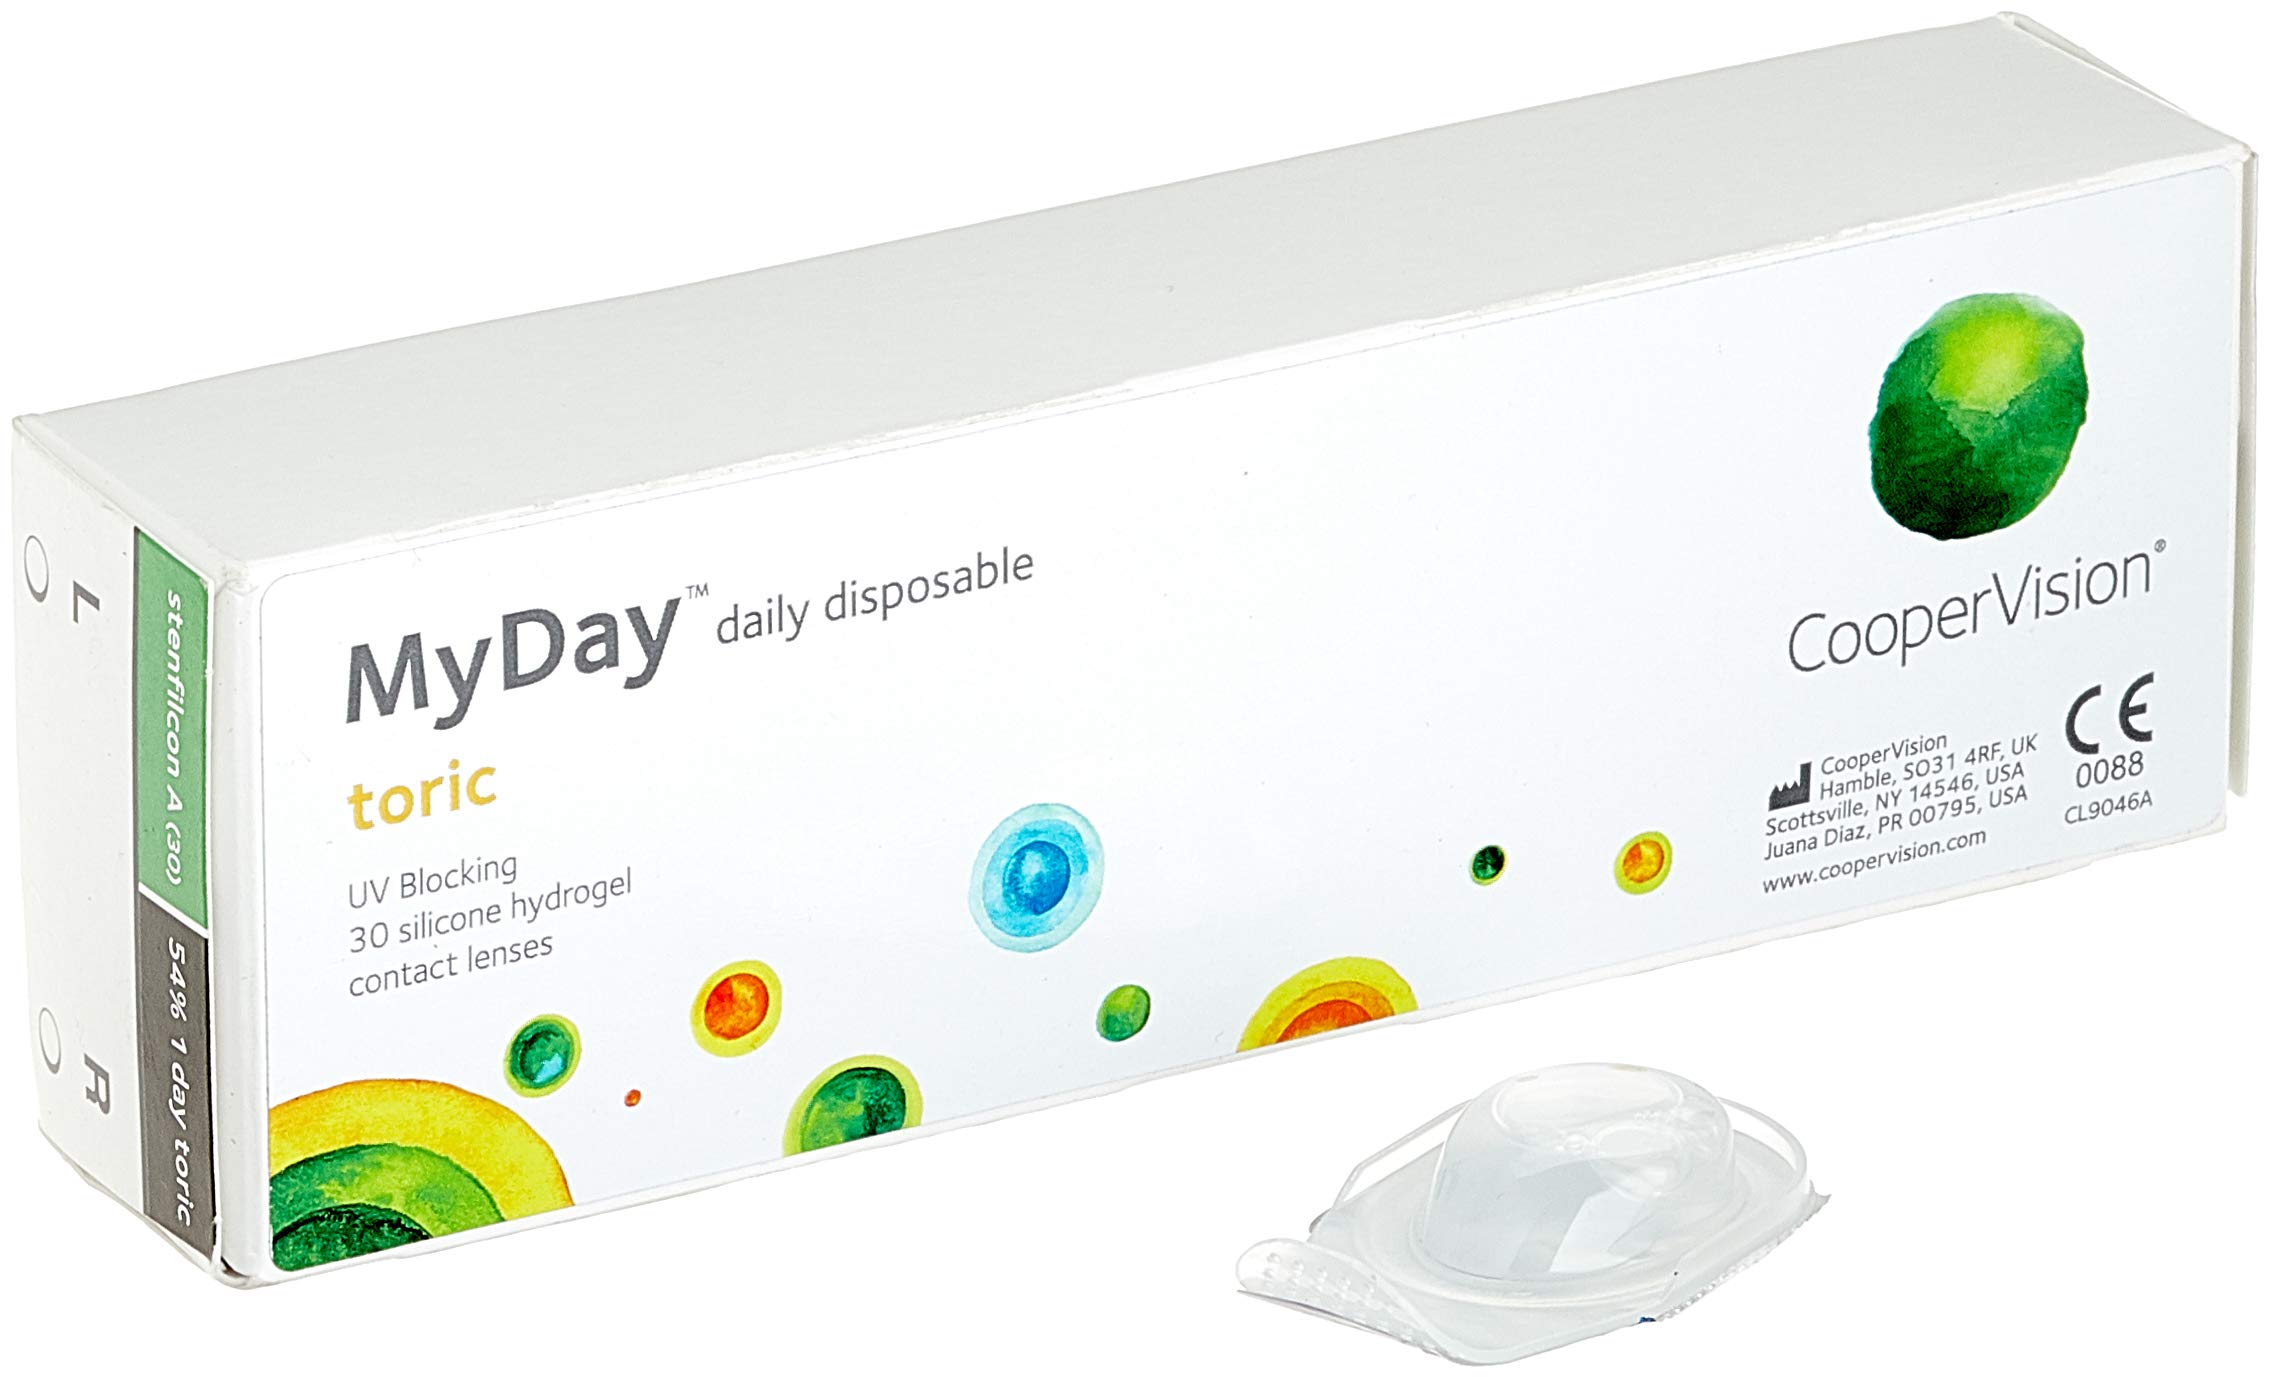 MYDAY Daily disposable Torisch Tageslinsen weich, 30 Stück / BC 8.6 mm / Dia 14.5 mm / CYL -0,75 / ACHSE 10 / -0.75 Dioptrien